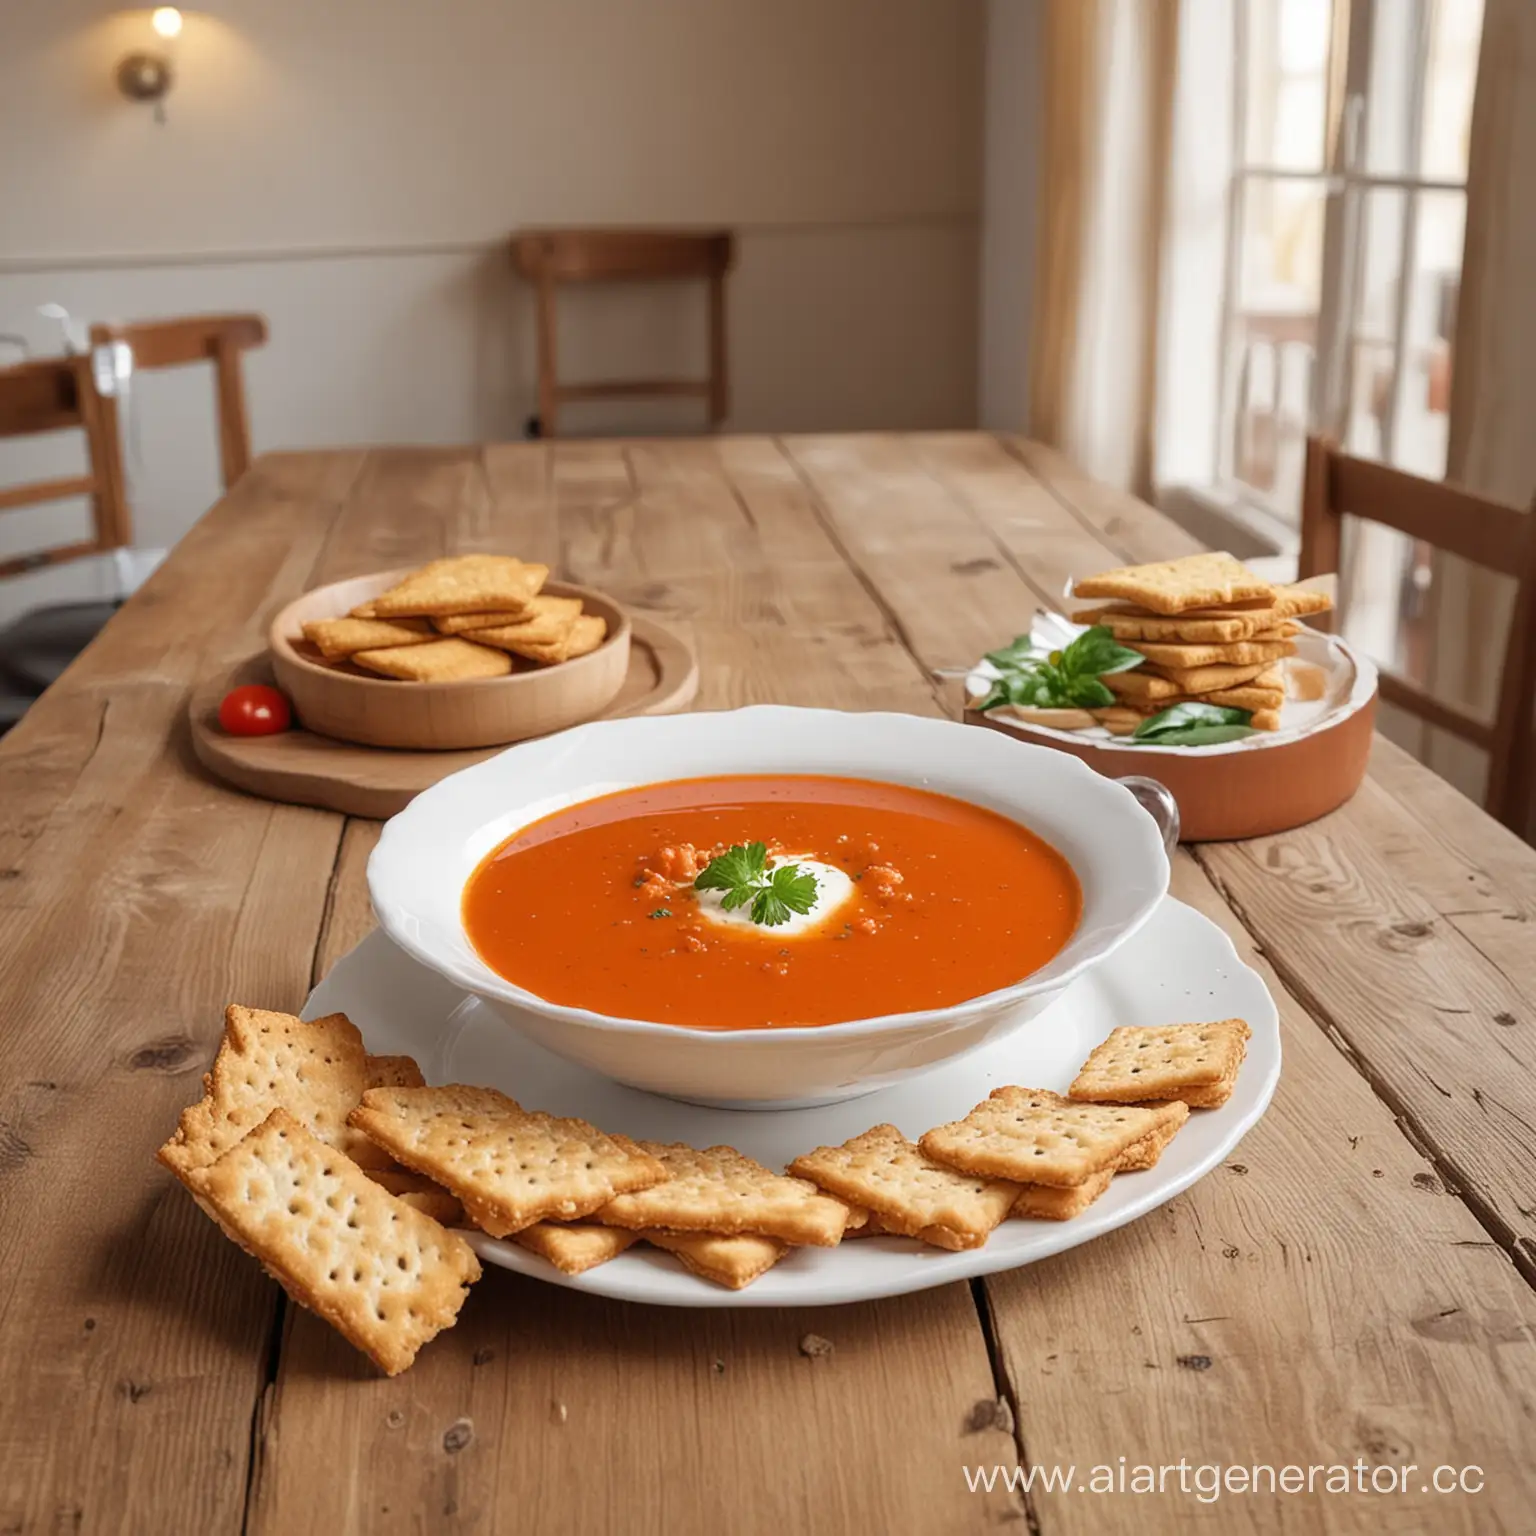 реалистичная фотография, томатный суп с хлебцами, в белой тарелке, на деревянном столе, на фоне интерьер ресторана в светлых оттенках, стиль: фото